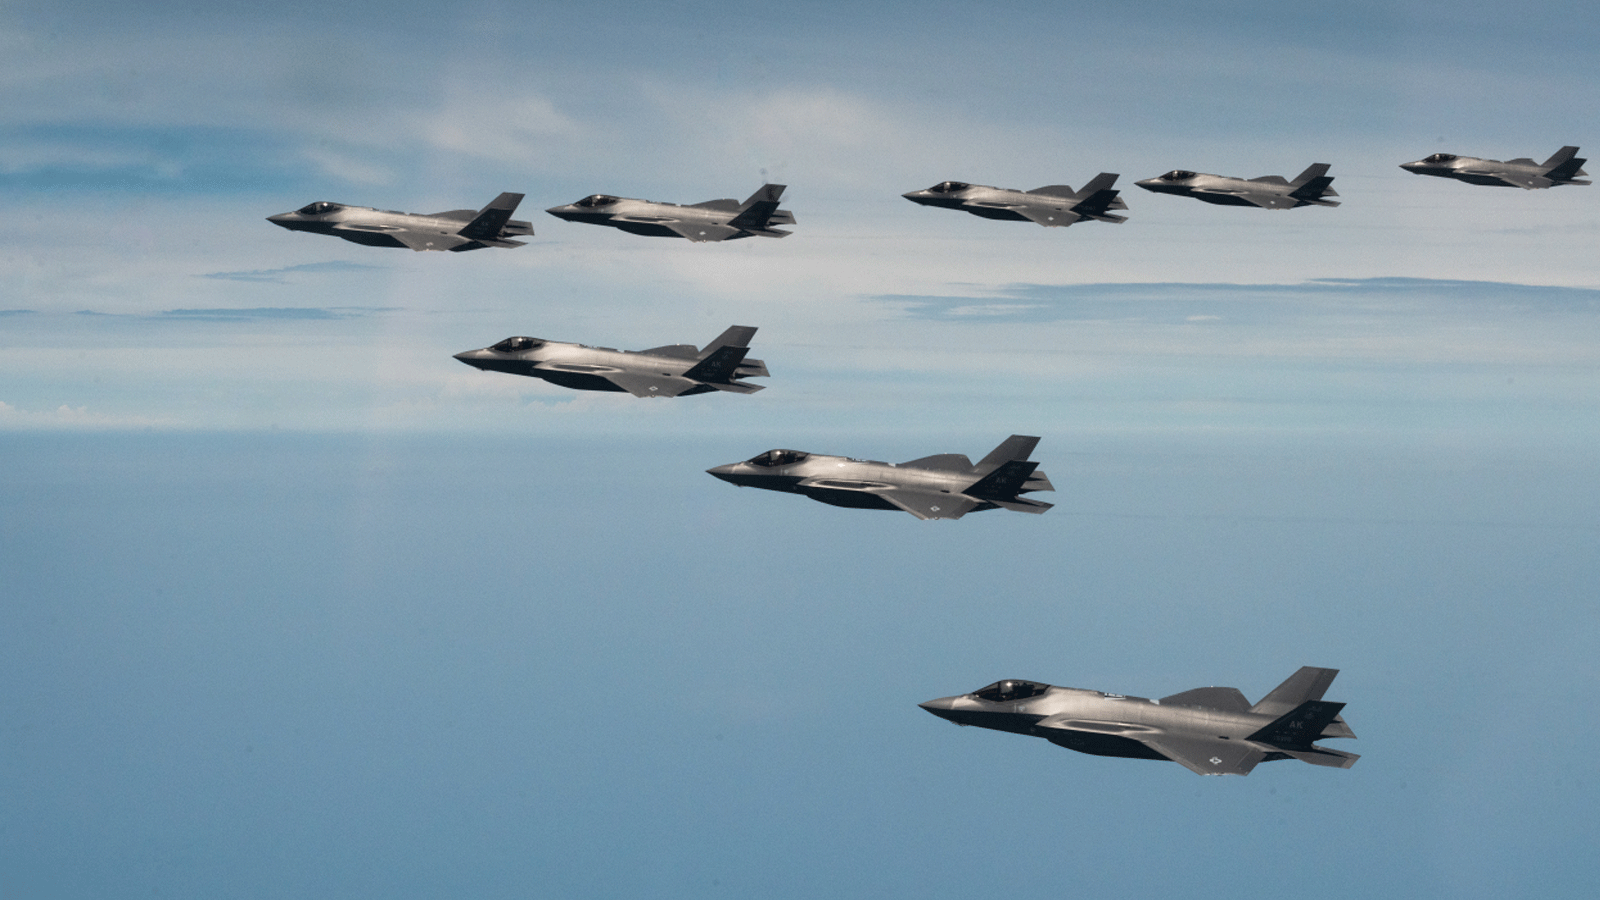 ثماني مقاتلات من طراز F-35A تحلق في تشكيل خلال التدريبات الجوية المشتركة بين كوريا الجنوبية والولايات المتحدة